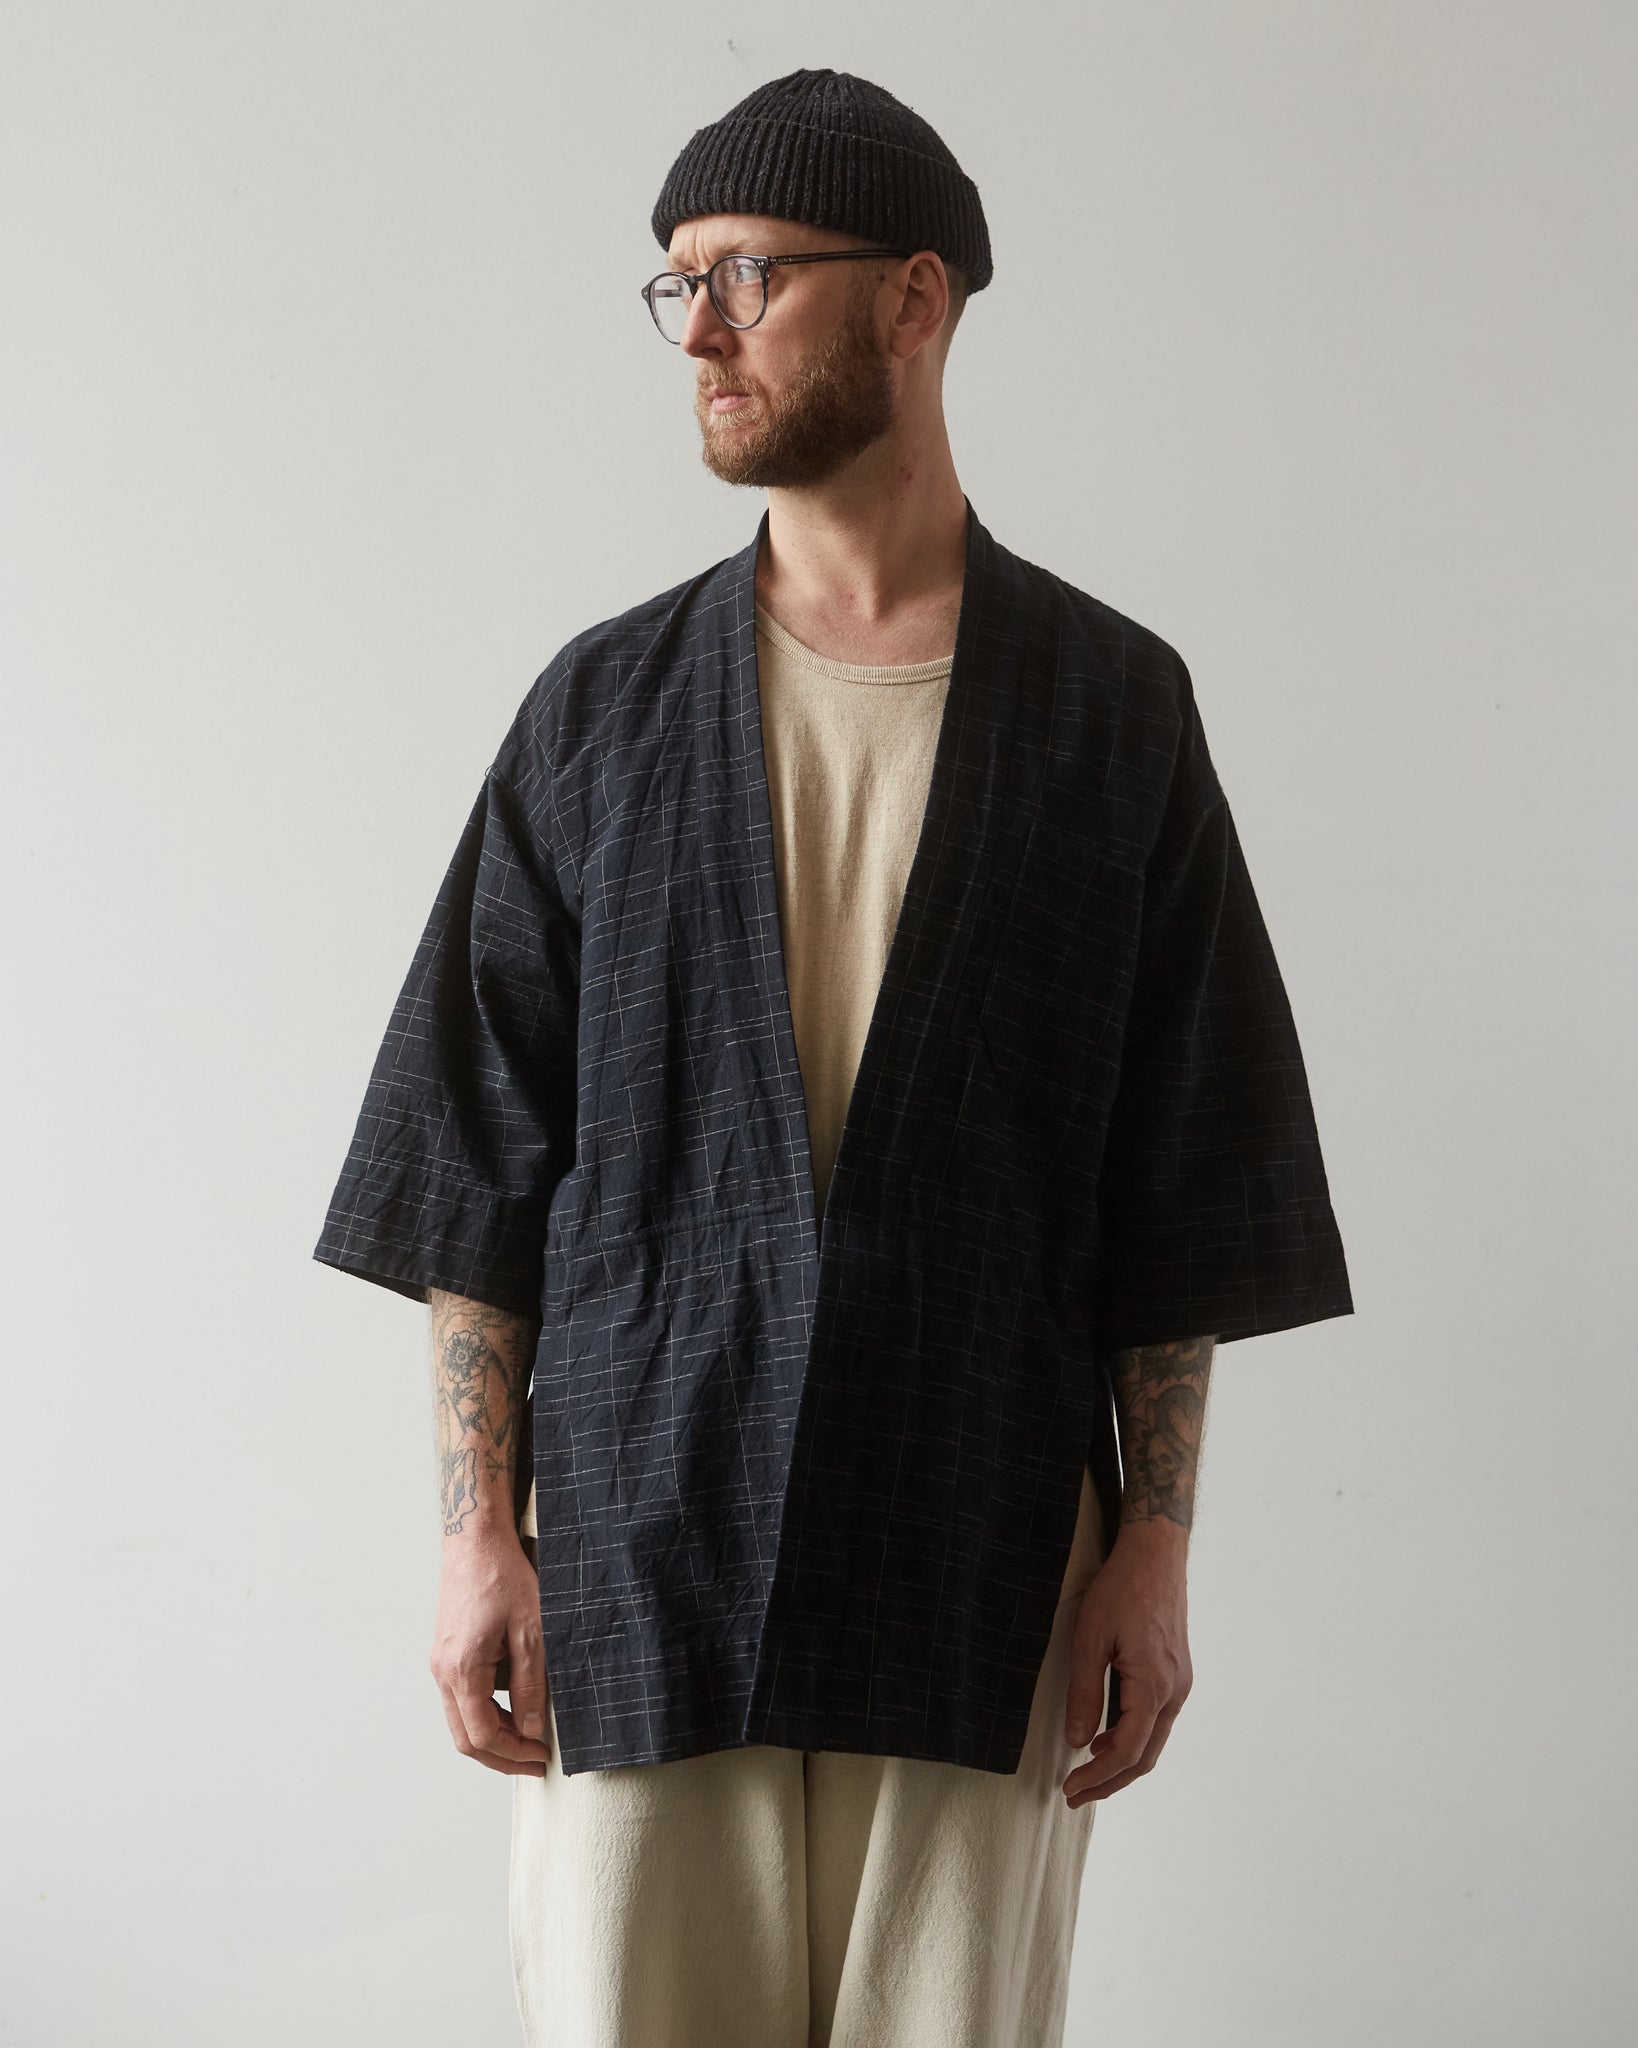 Jan-Jan Van Essche Unisex Kimono #10, Black Kasuri